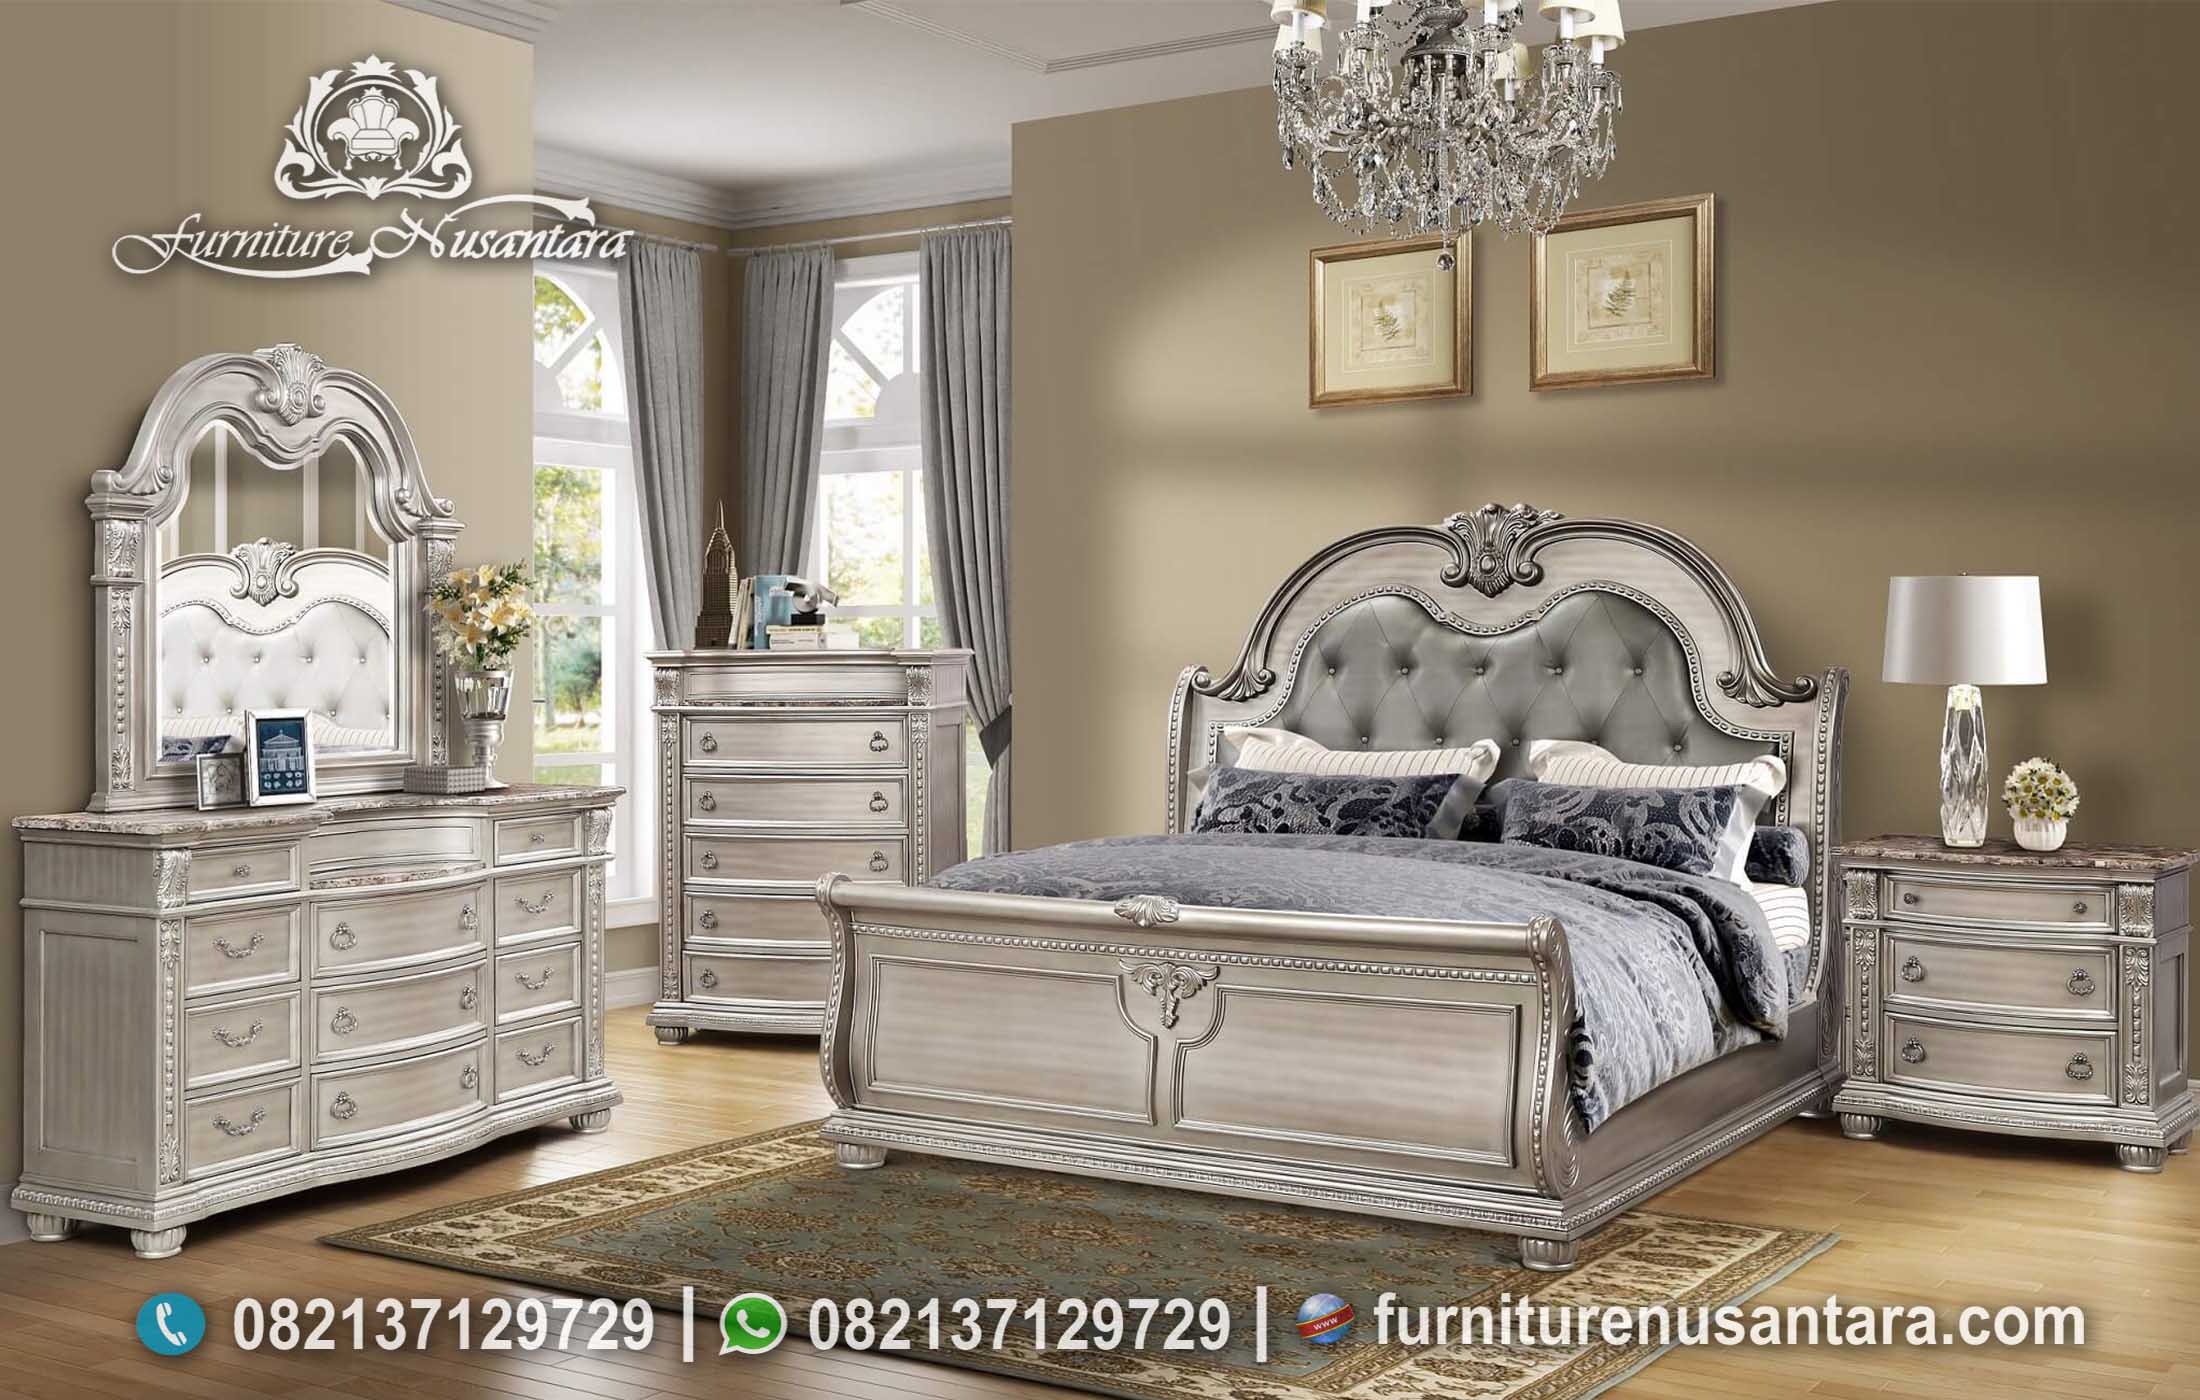 Jual Tempat Tidur Klasik Ukir Elegan KS-142, Furniture Nusantara